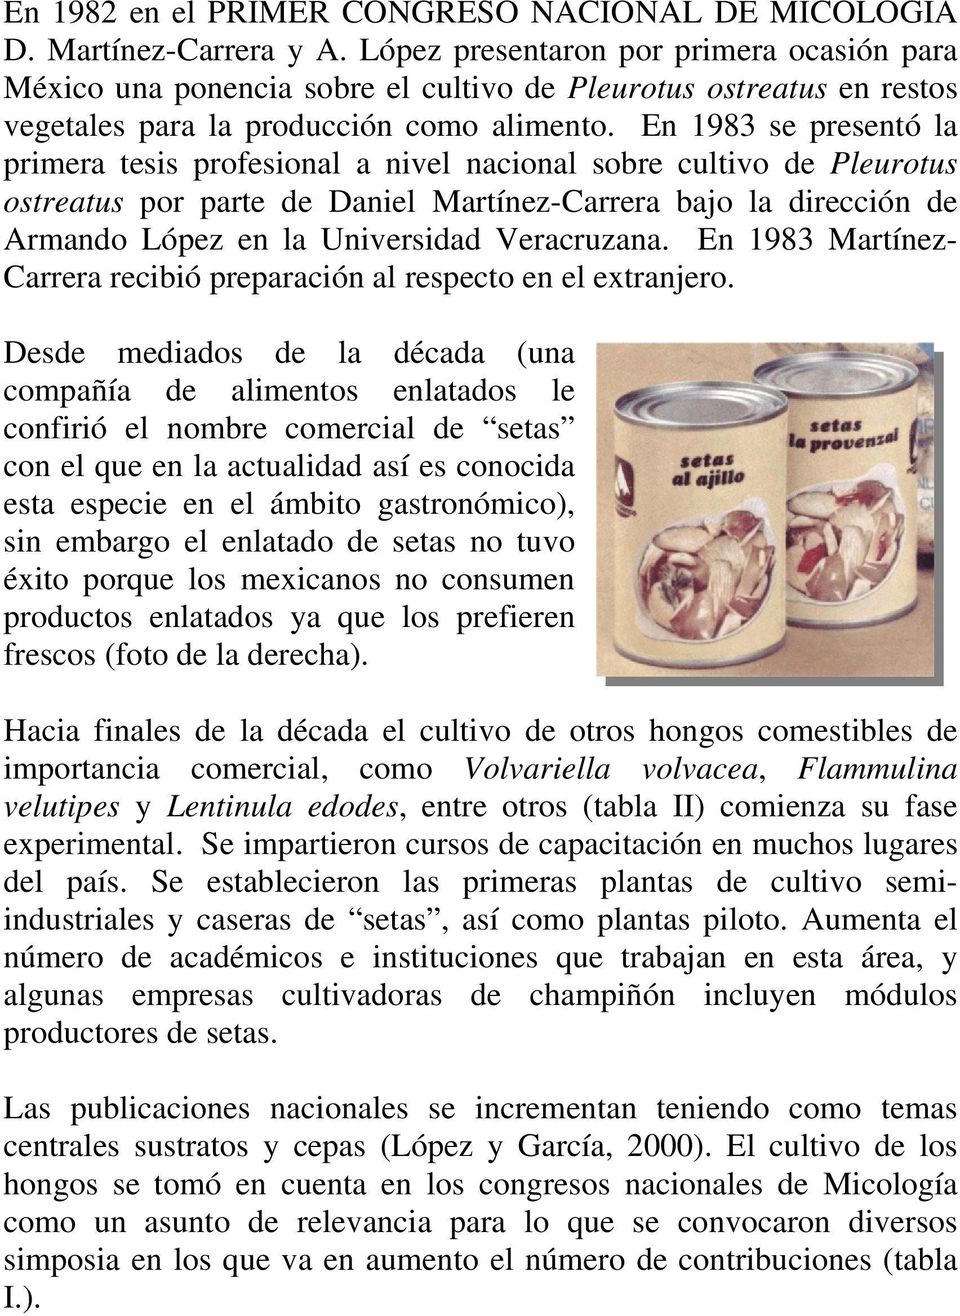 En 1983 se presentó la primera tesis profesional a nivel nacional sobre cultivo de Pleurotus ostreatus por parte de Daniel Martínez-Carrera bajo la dirección de Armando López en la Universidad